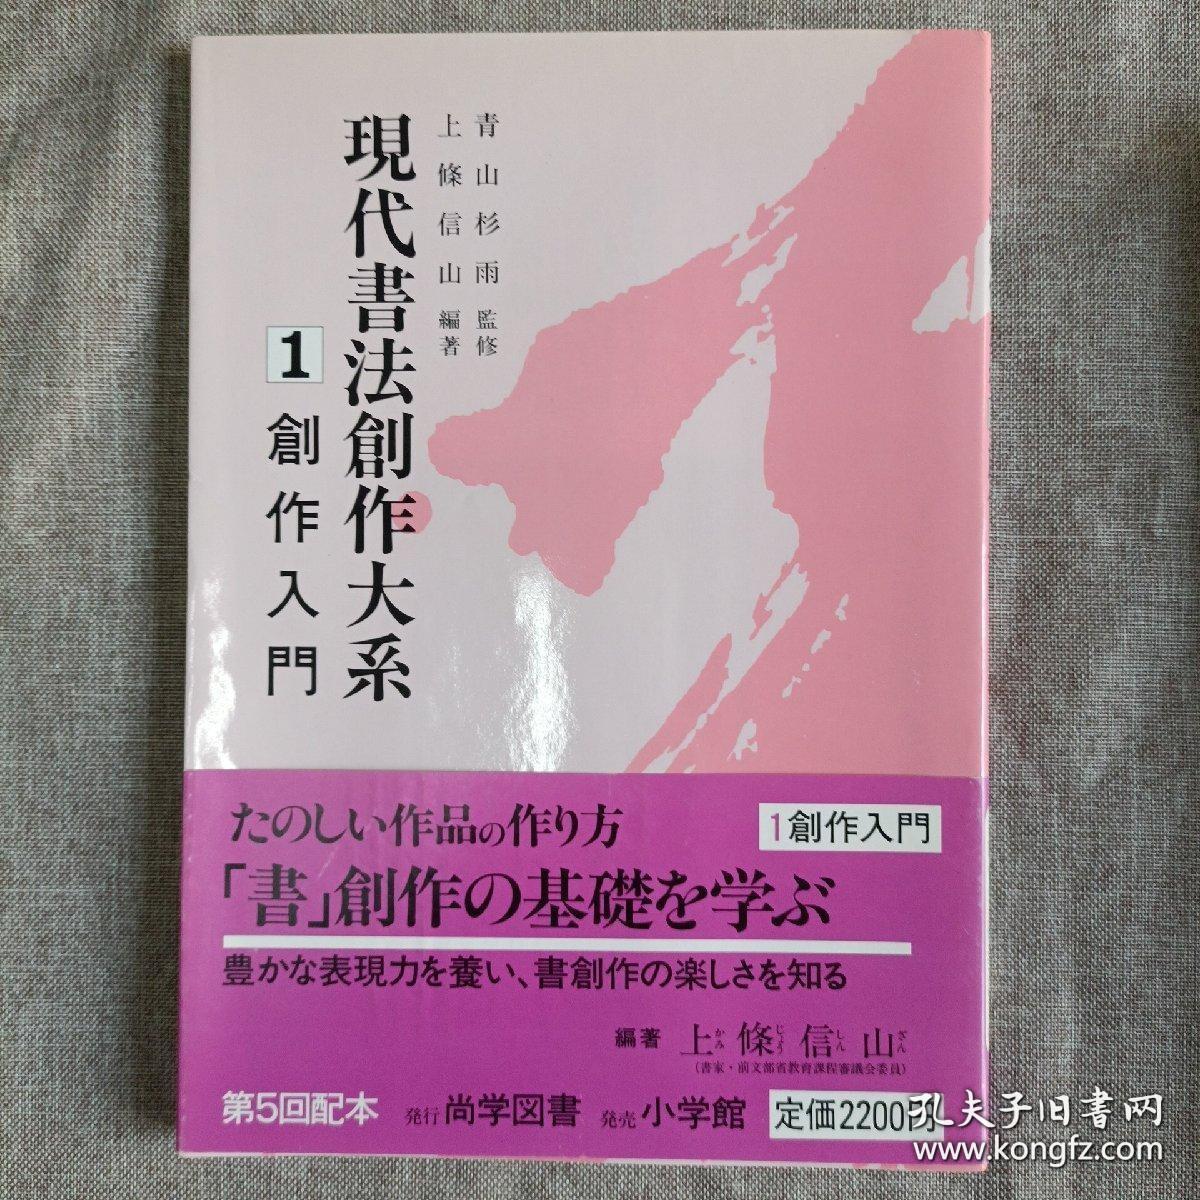 希少 现代书法创作大系 1-5 全五卷 大16开 日本原版现货